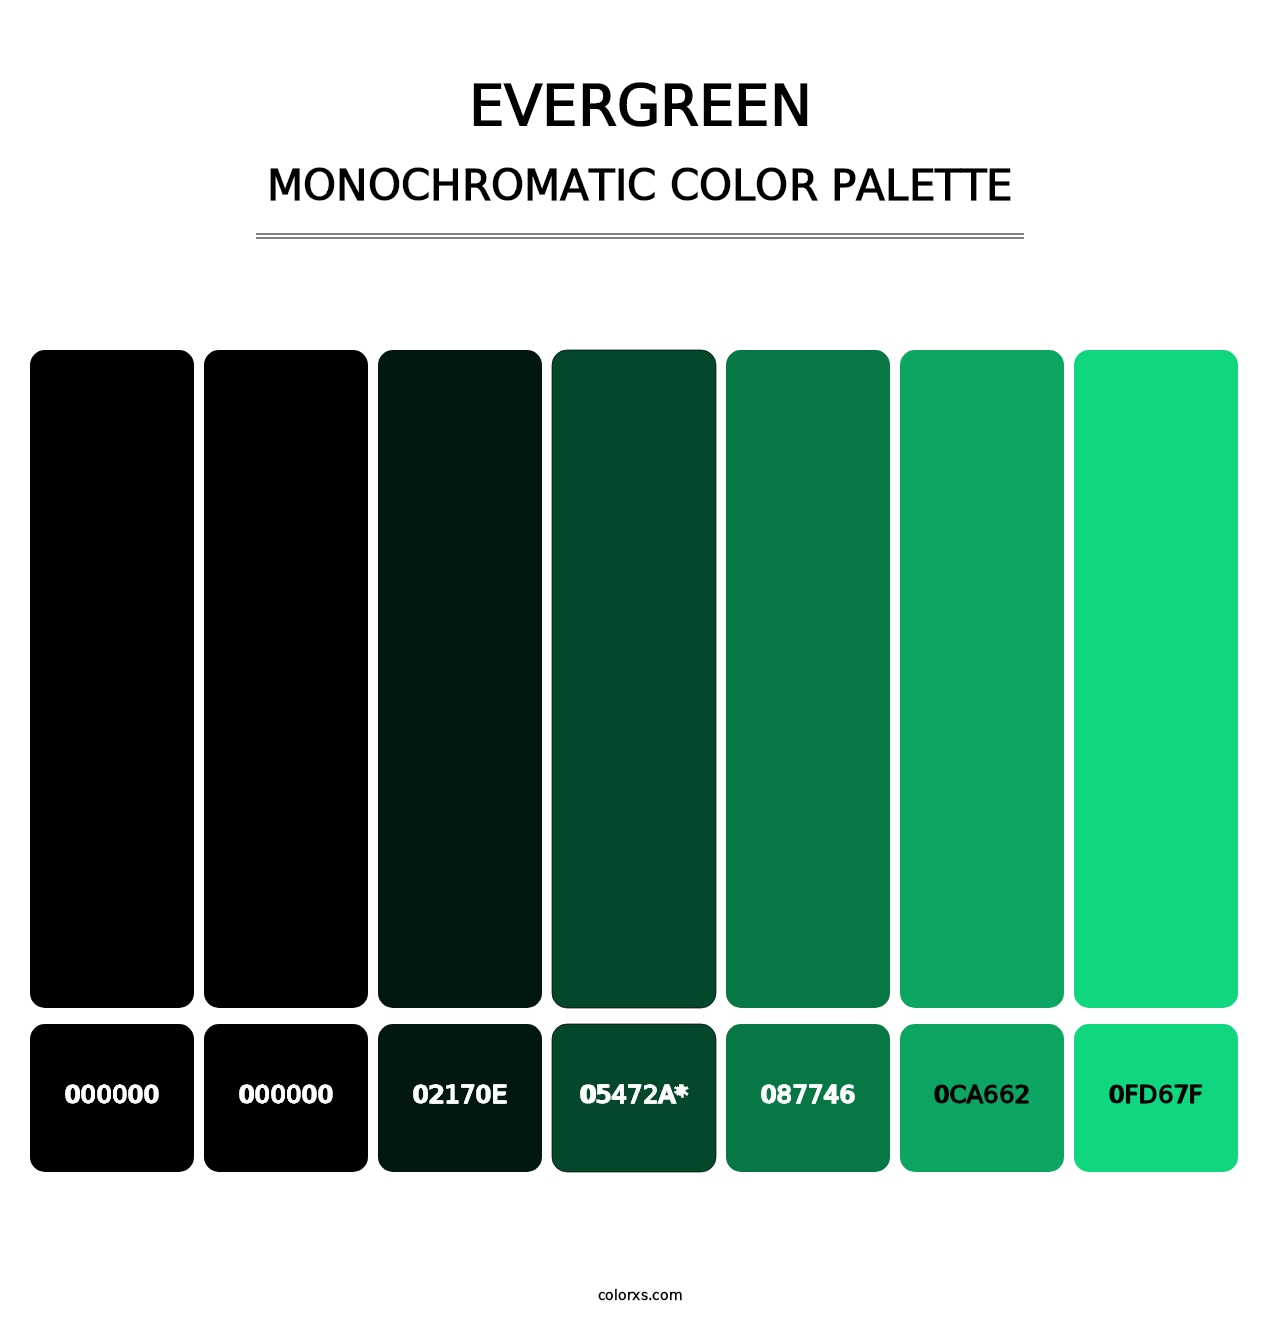 Evergreen - Monochromatic Color Palette